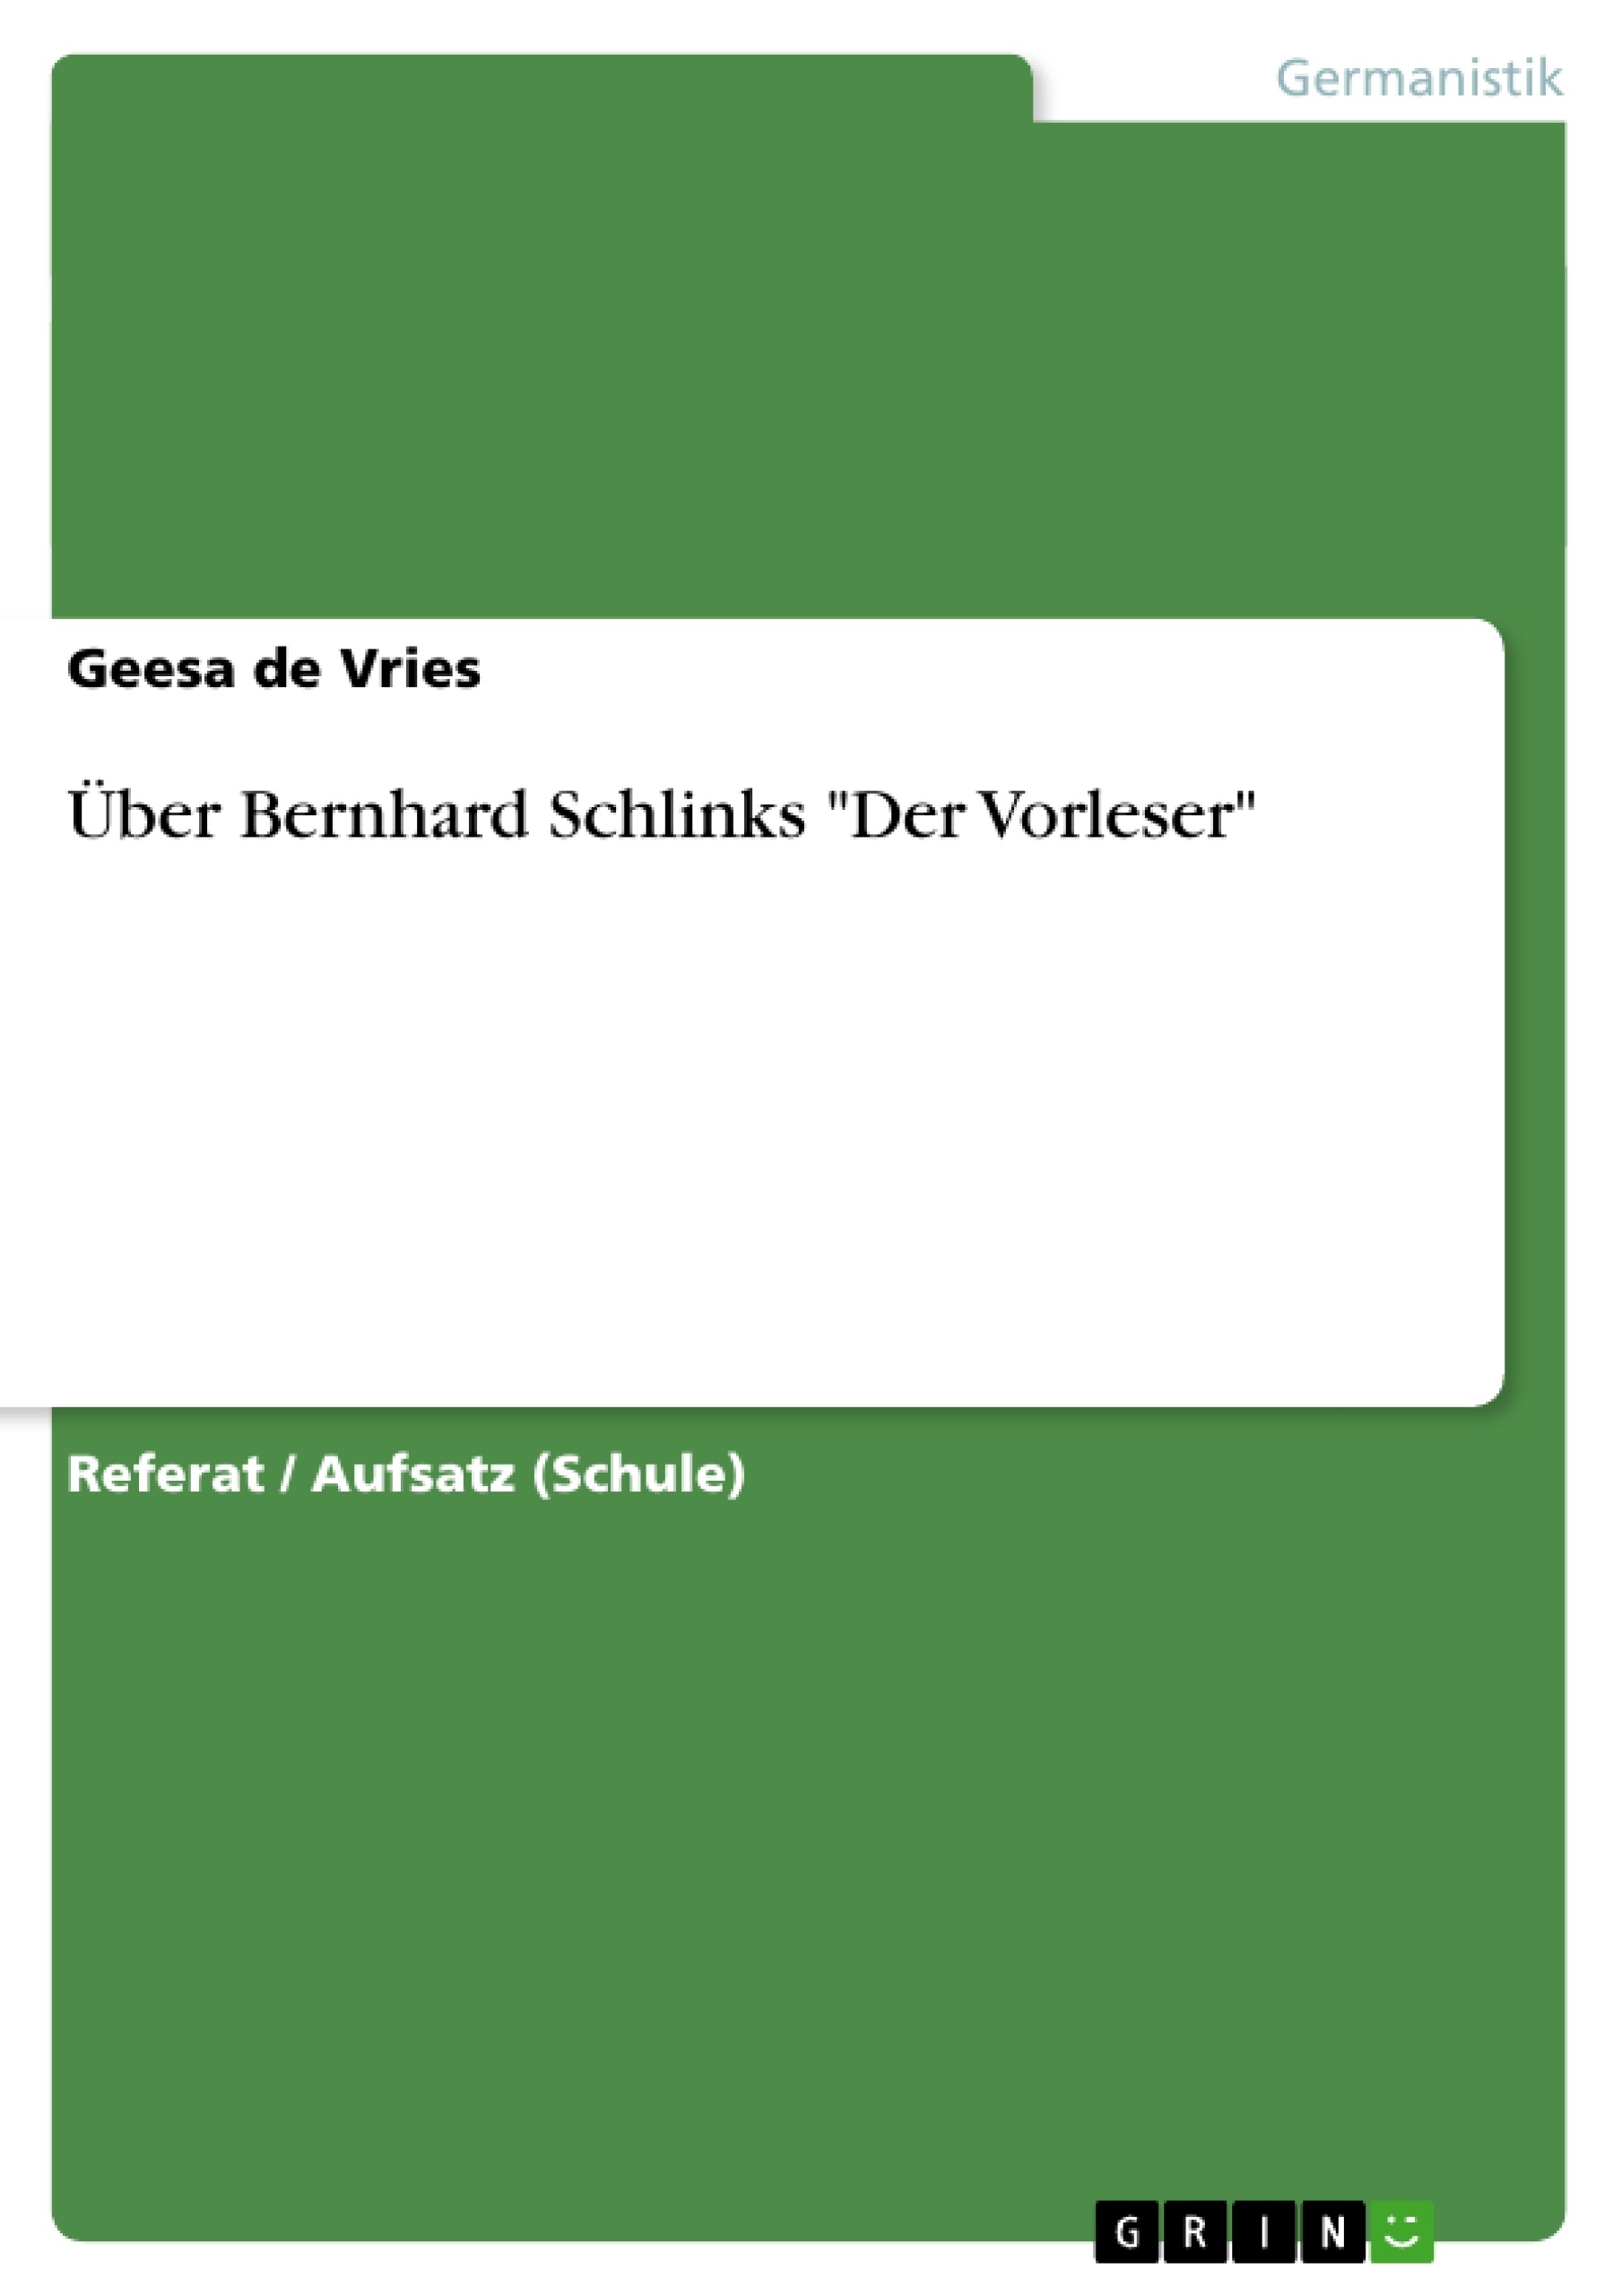 Titre: Über Bernhard Schlinks "Der Vorleser"